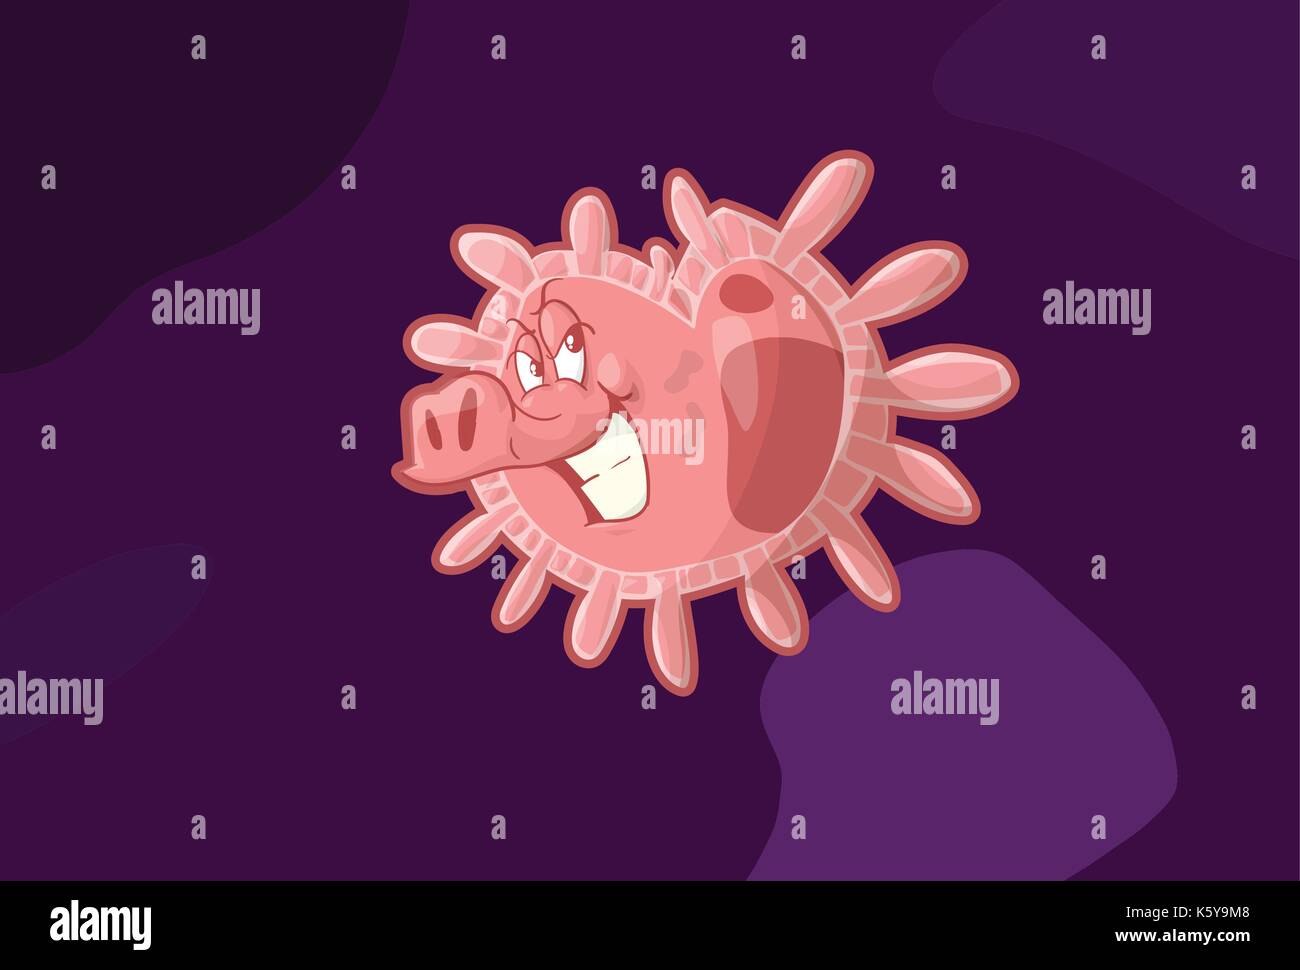 Colorata illustrazione vettoriale di h1n1 di influenza suina, virus di influenza, guardando come un maiale sorridente. Illustrazione Vettoriale